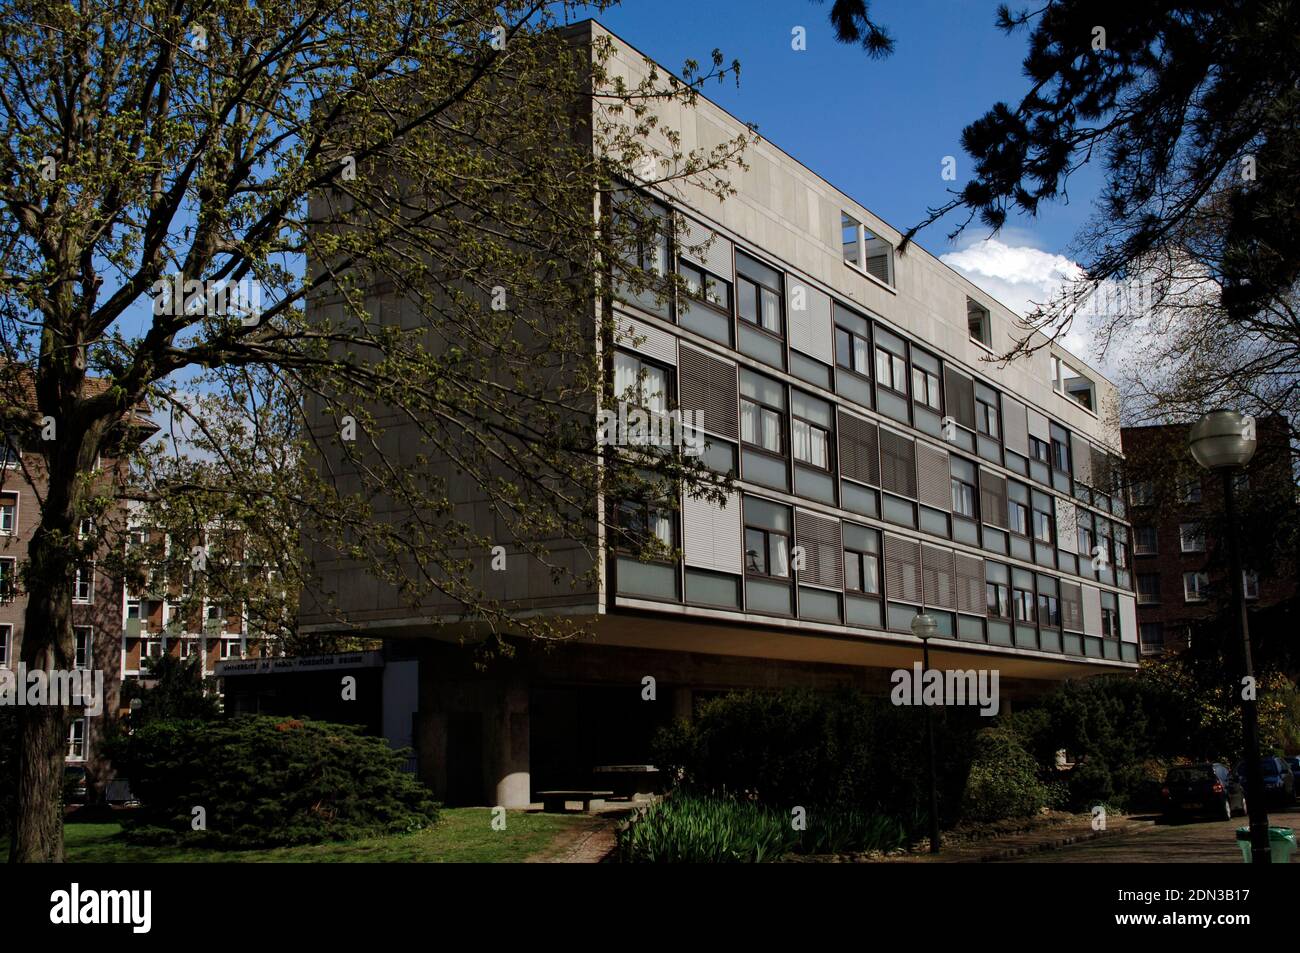 Francia, París. El Campus Universitario Internacional. El Pabellón Suizo. Edificio diseñado por le Corbusier (1887-1965) y Pierre Jeanneret (1896-1967) entre 1930 y 1931. Fue inaugurado en julio de 1933. Vista exterior. Foto de stock